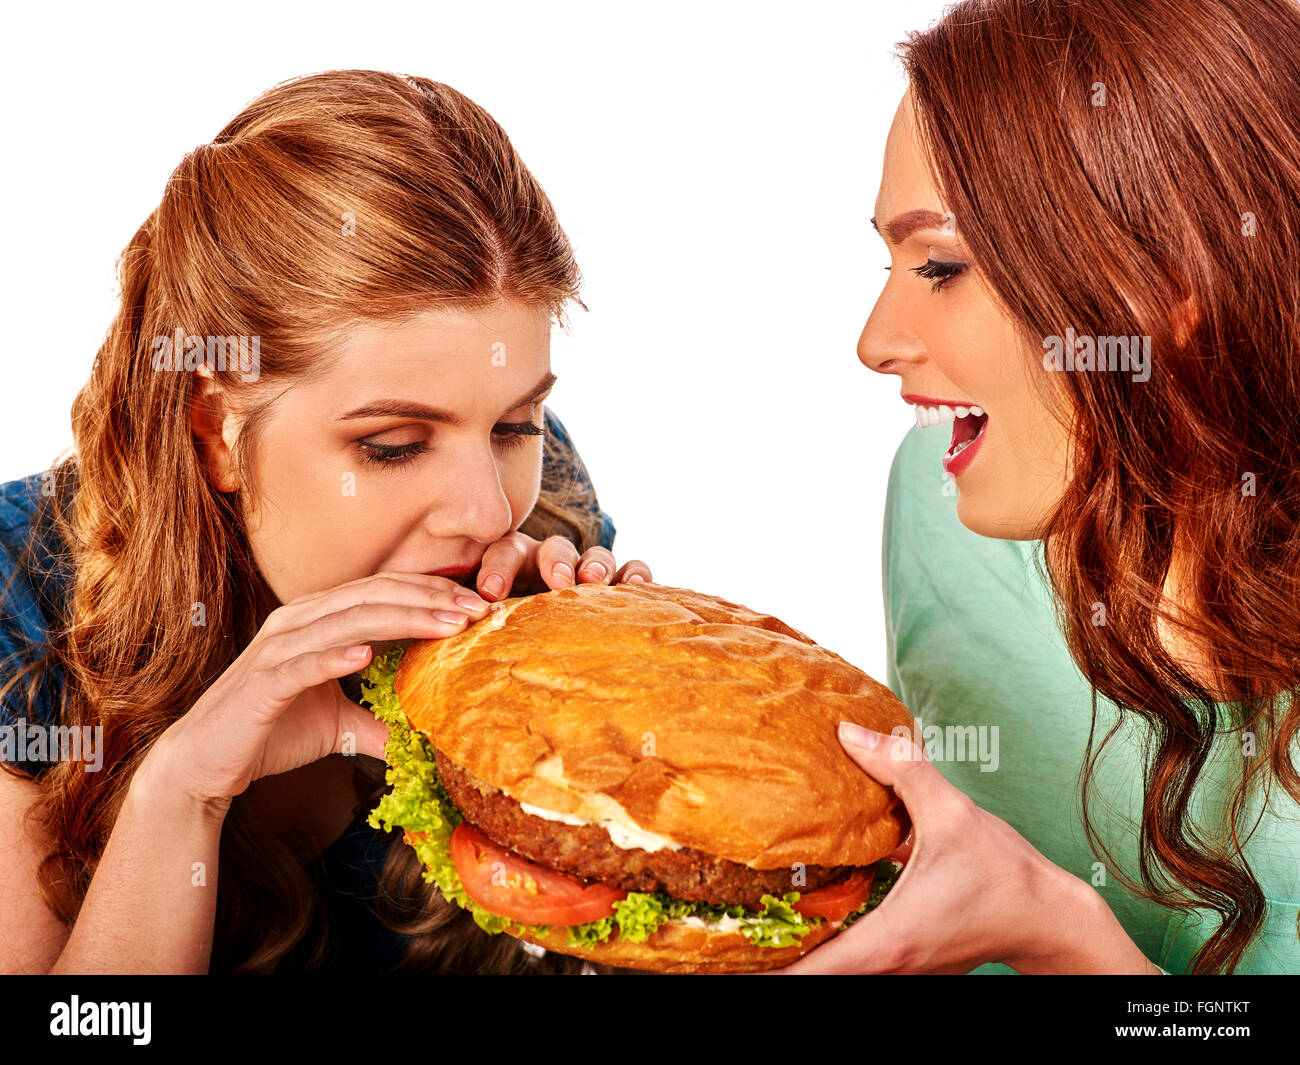 Ragazza di mangiare grandi sandwich. Foto Stock